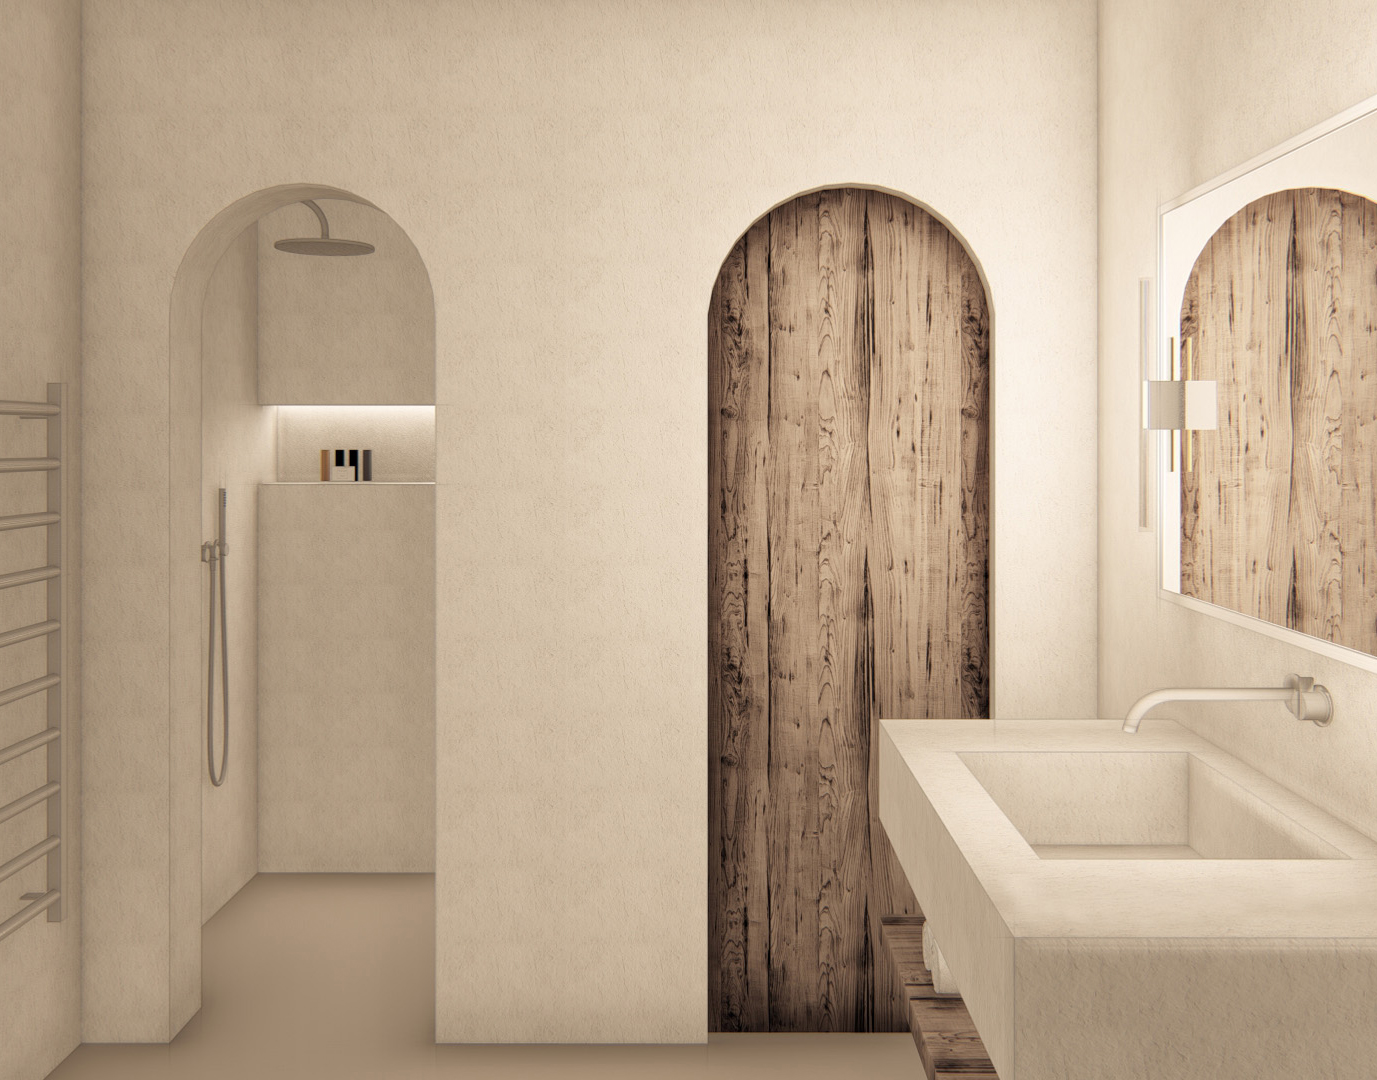 Render del interiorismo de un baño minimalista con iluminación clara y decoración rústica del estudio de arquitectura KLARQ.